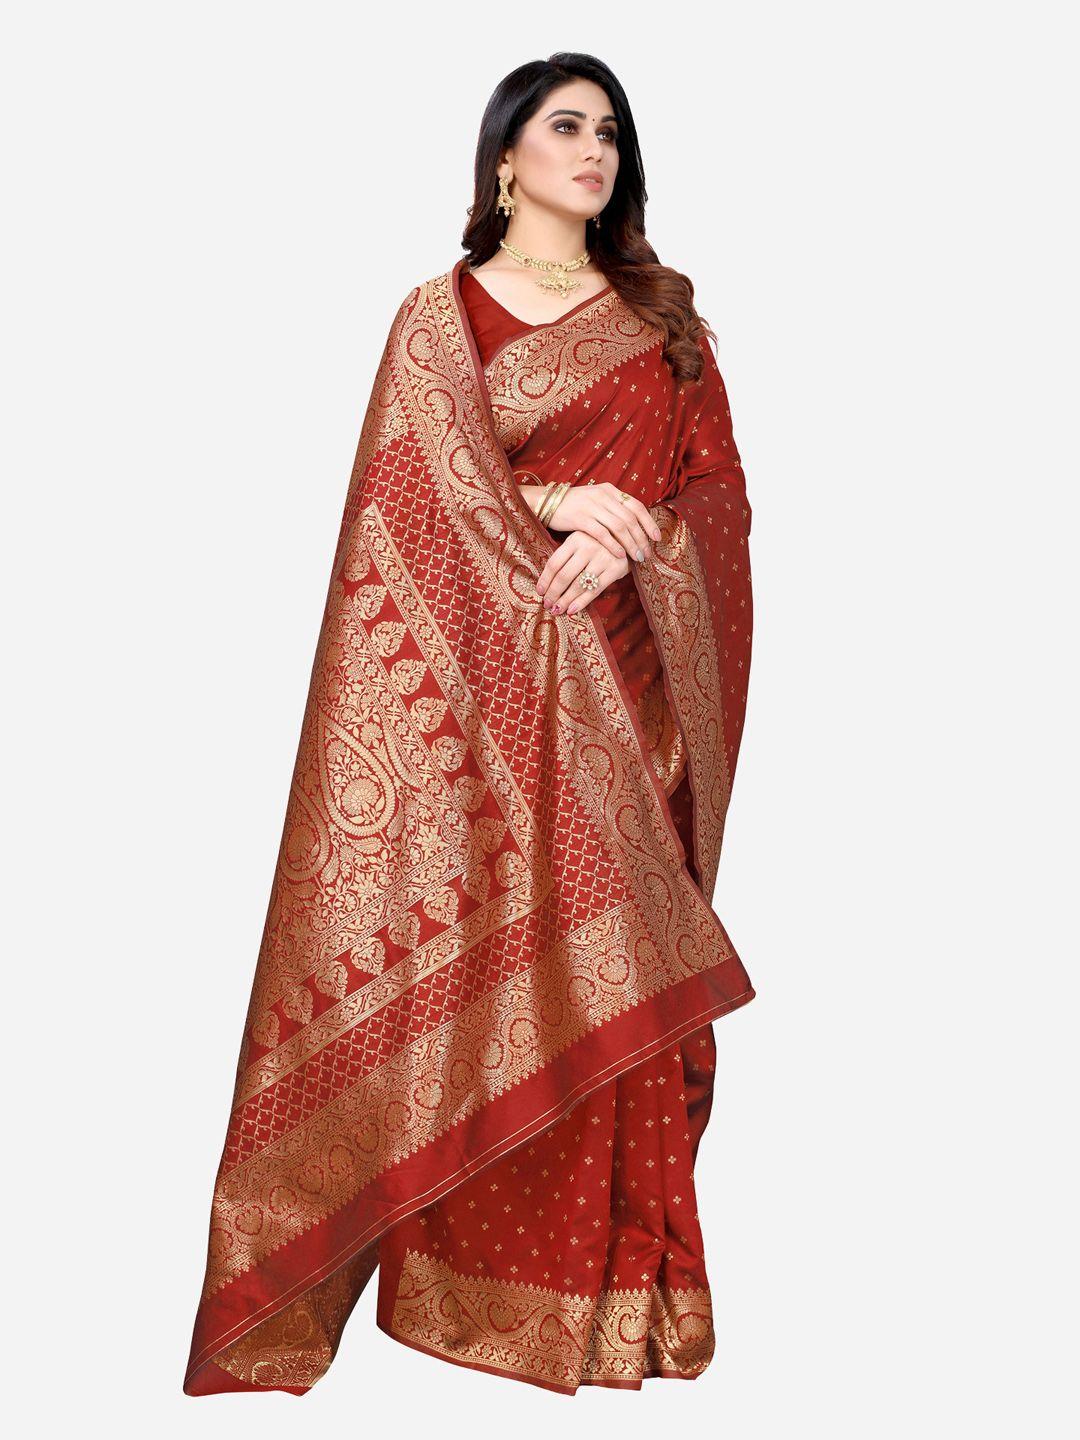 siril red & gold-toned woven design zari banarasi saree